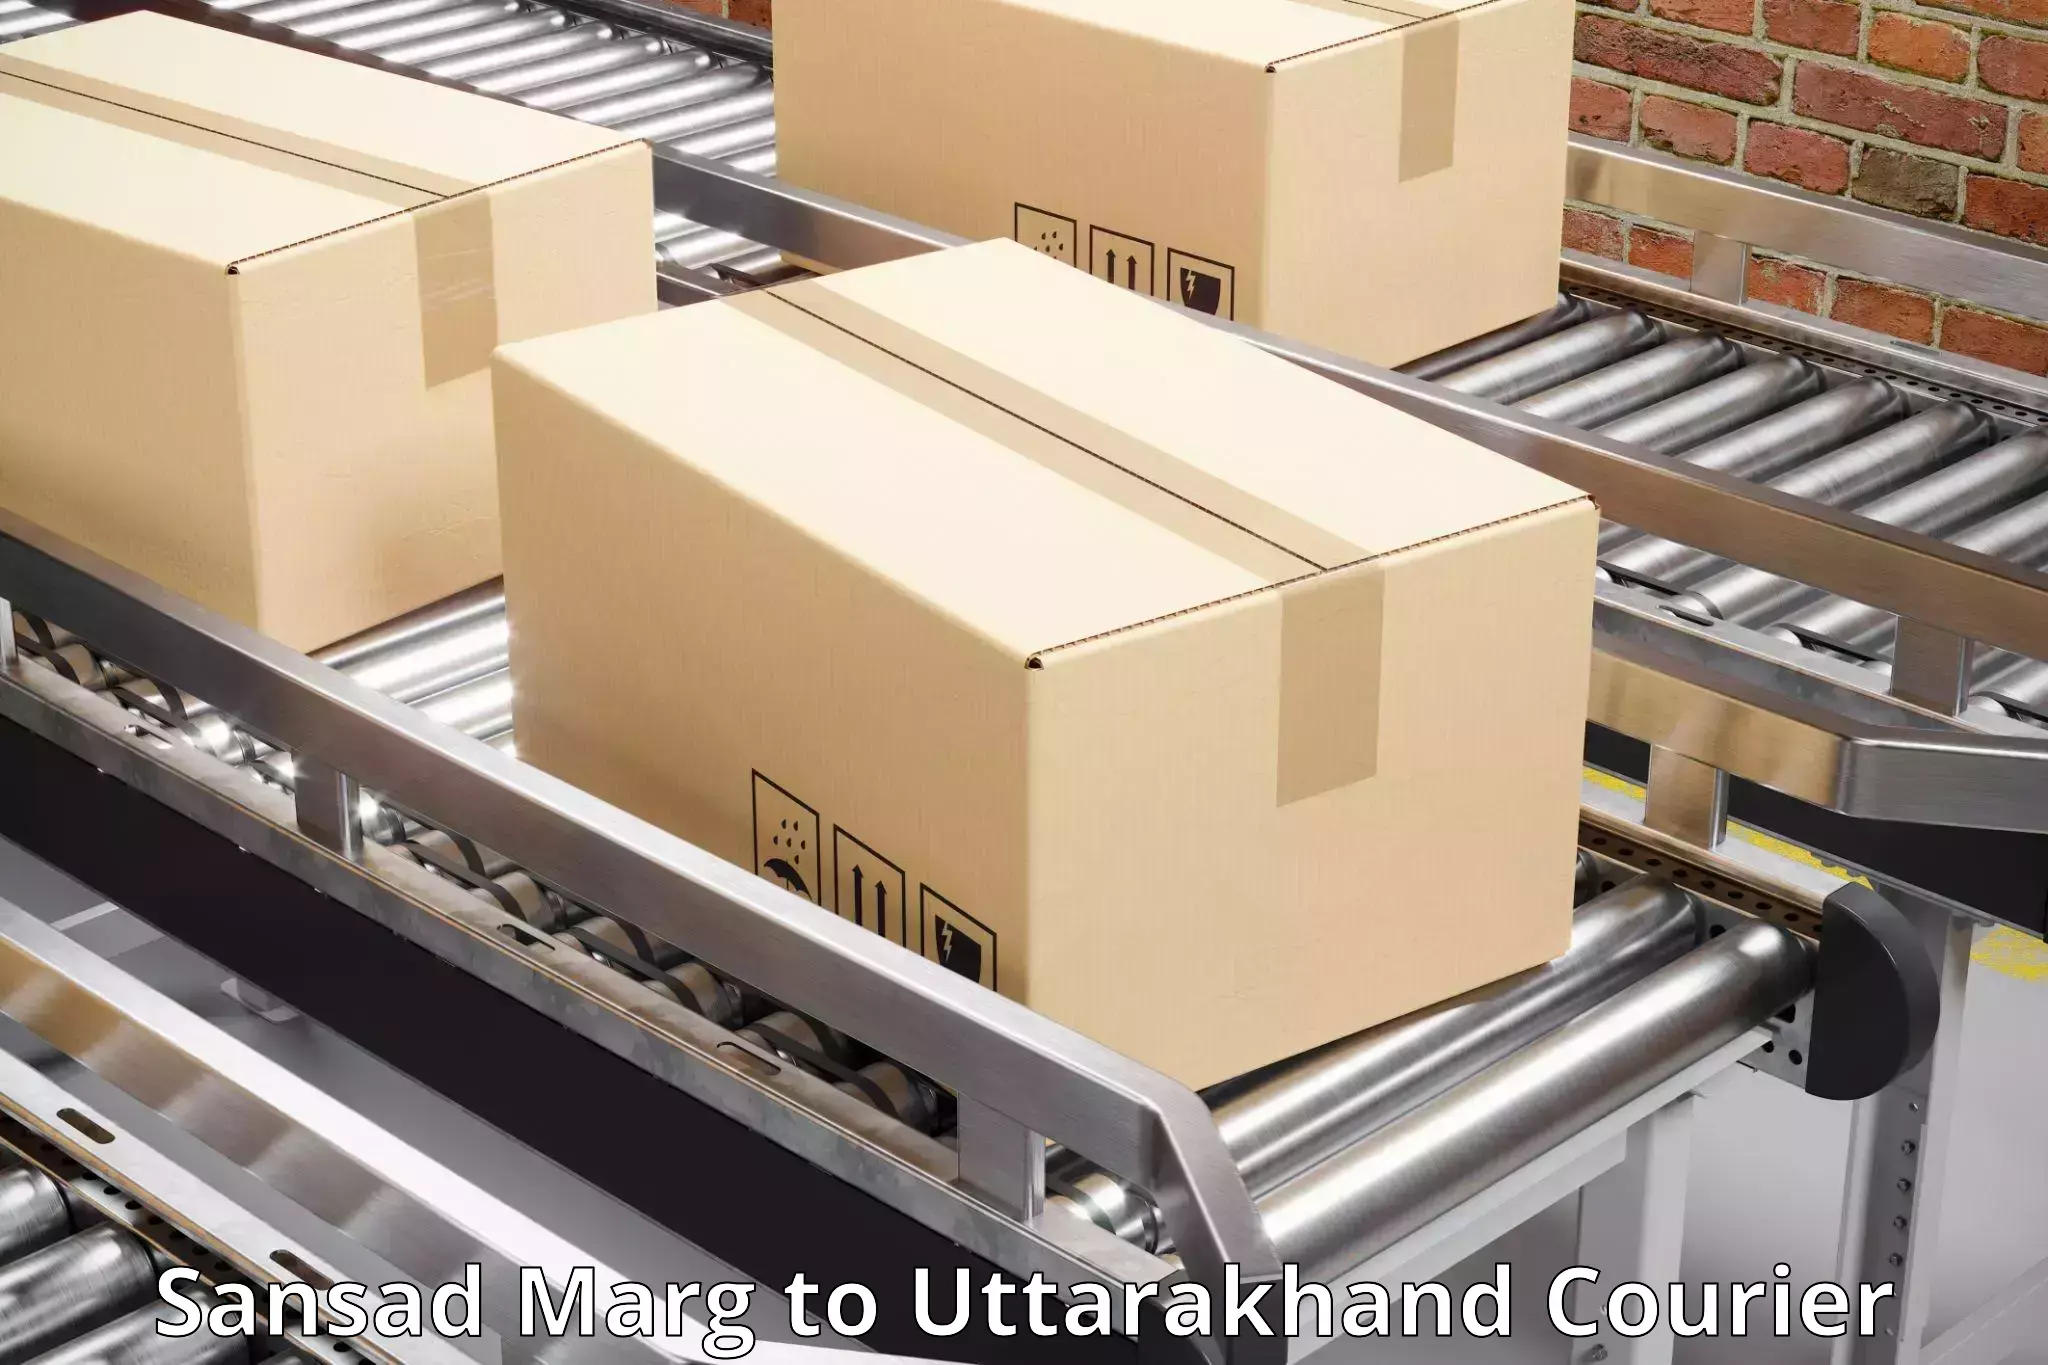 Flexible parcel services in Sansad Marg to Dwarahat